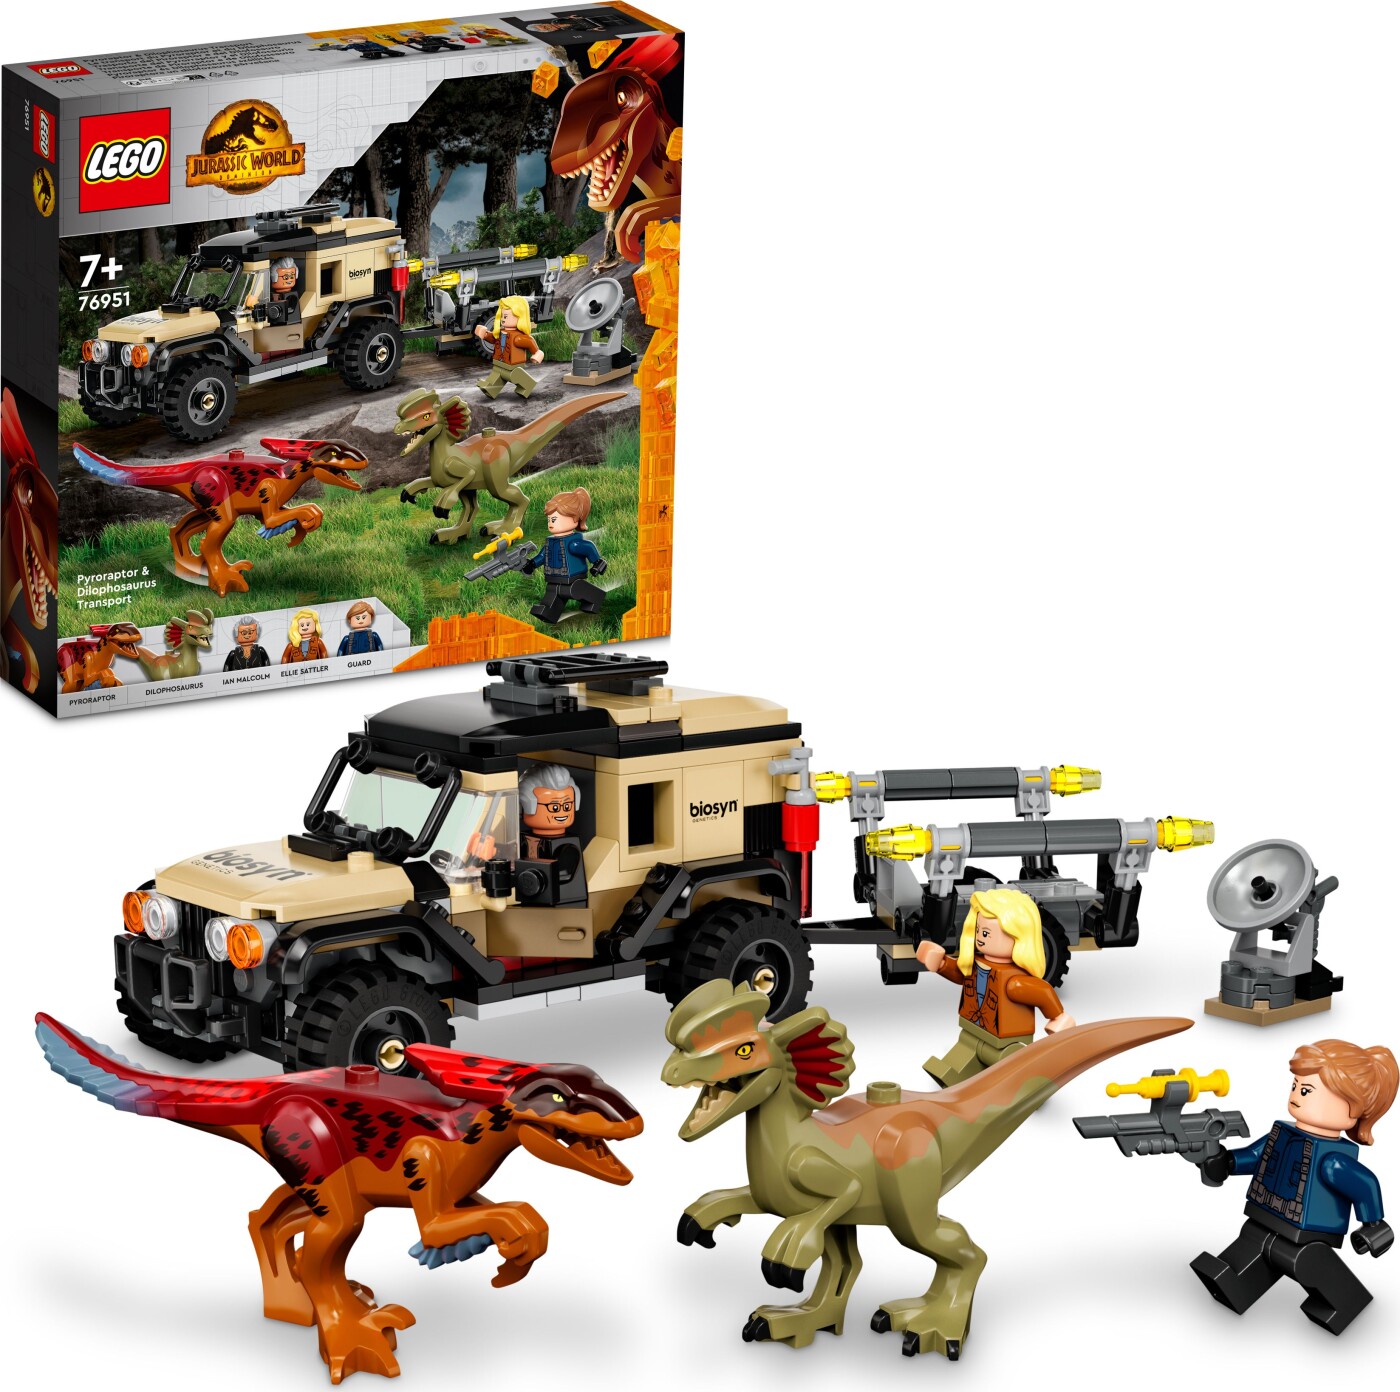 Billede af Lego Jurassic World - Pyroraptor Og Dilophosaurus Transport - 76951 hos Gucca.dk